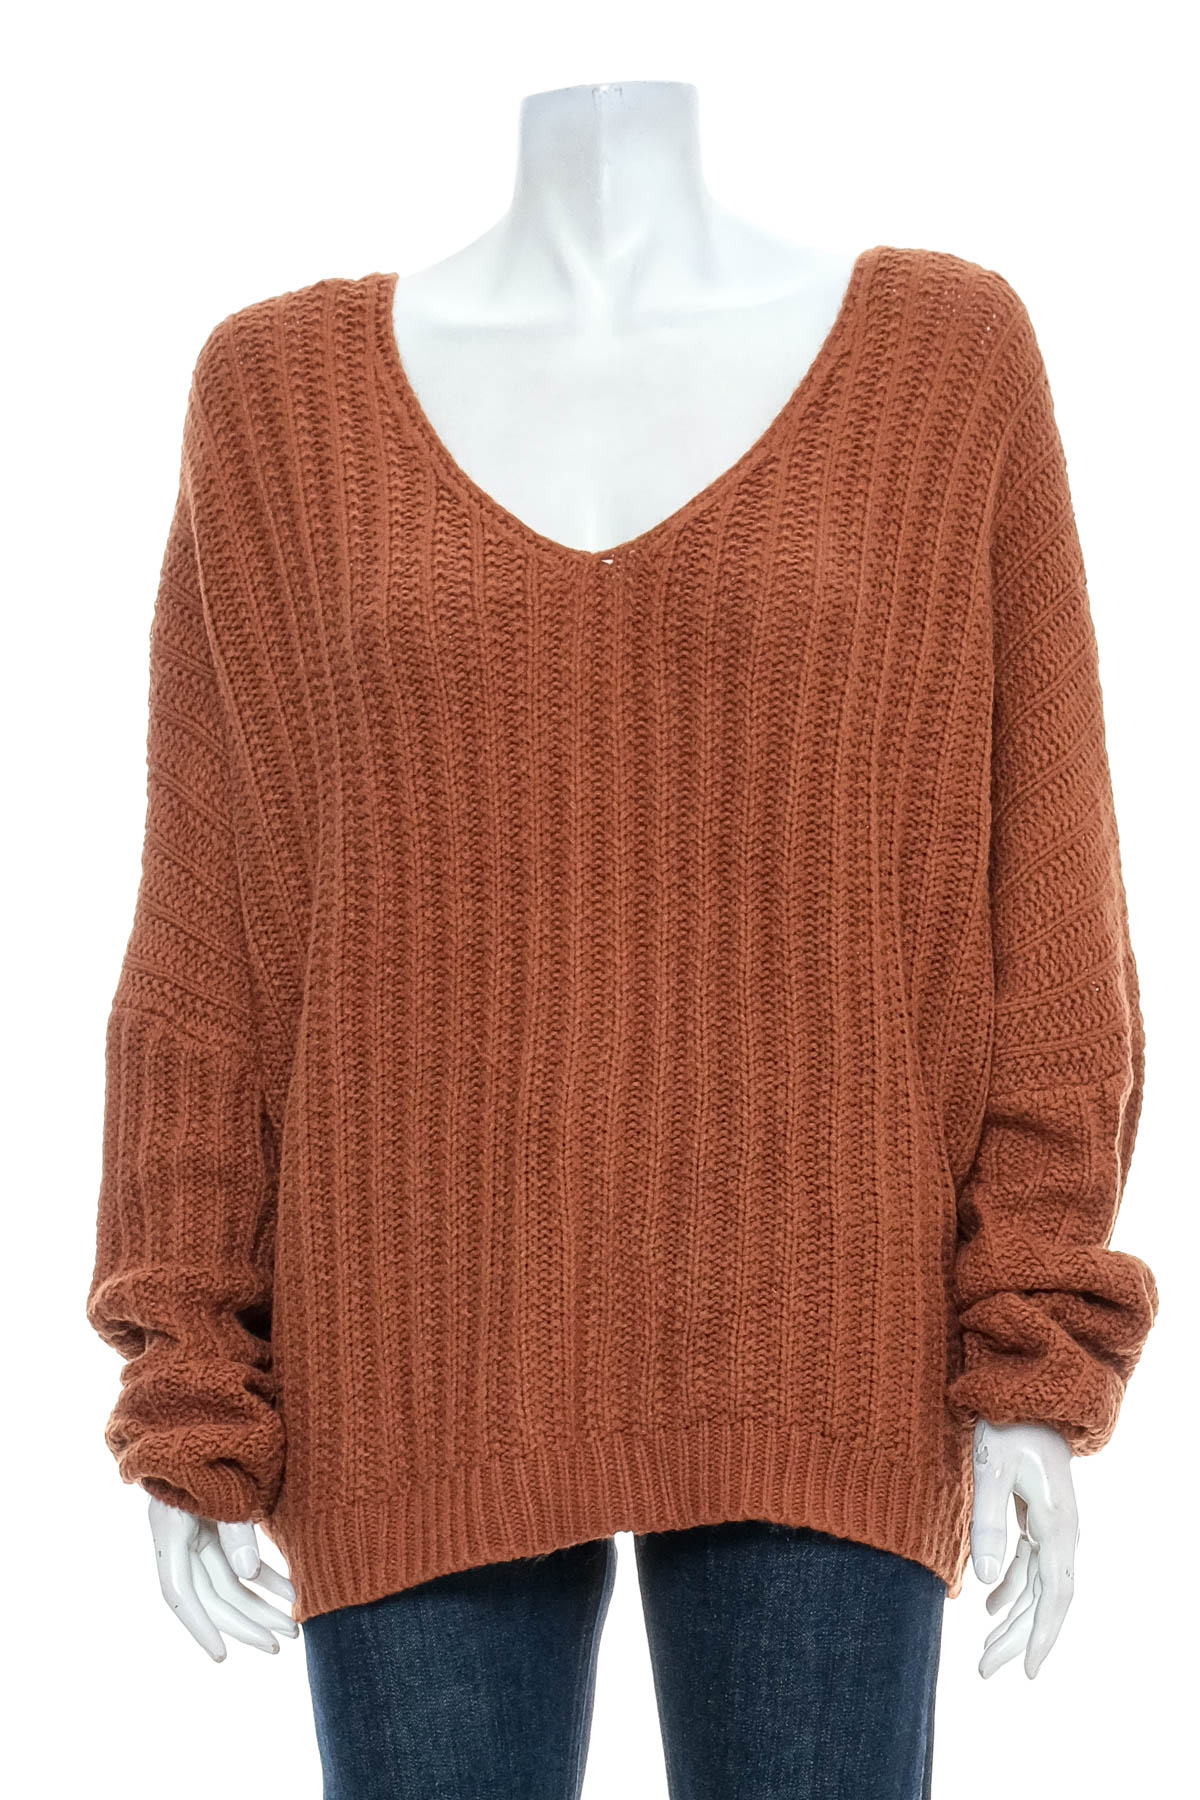 Women's sweater - Rue 21 - 0